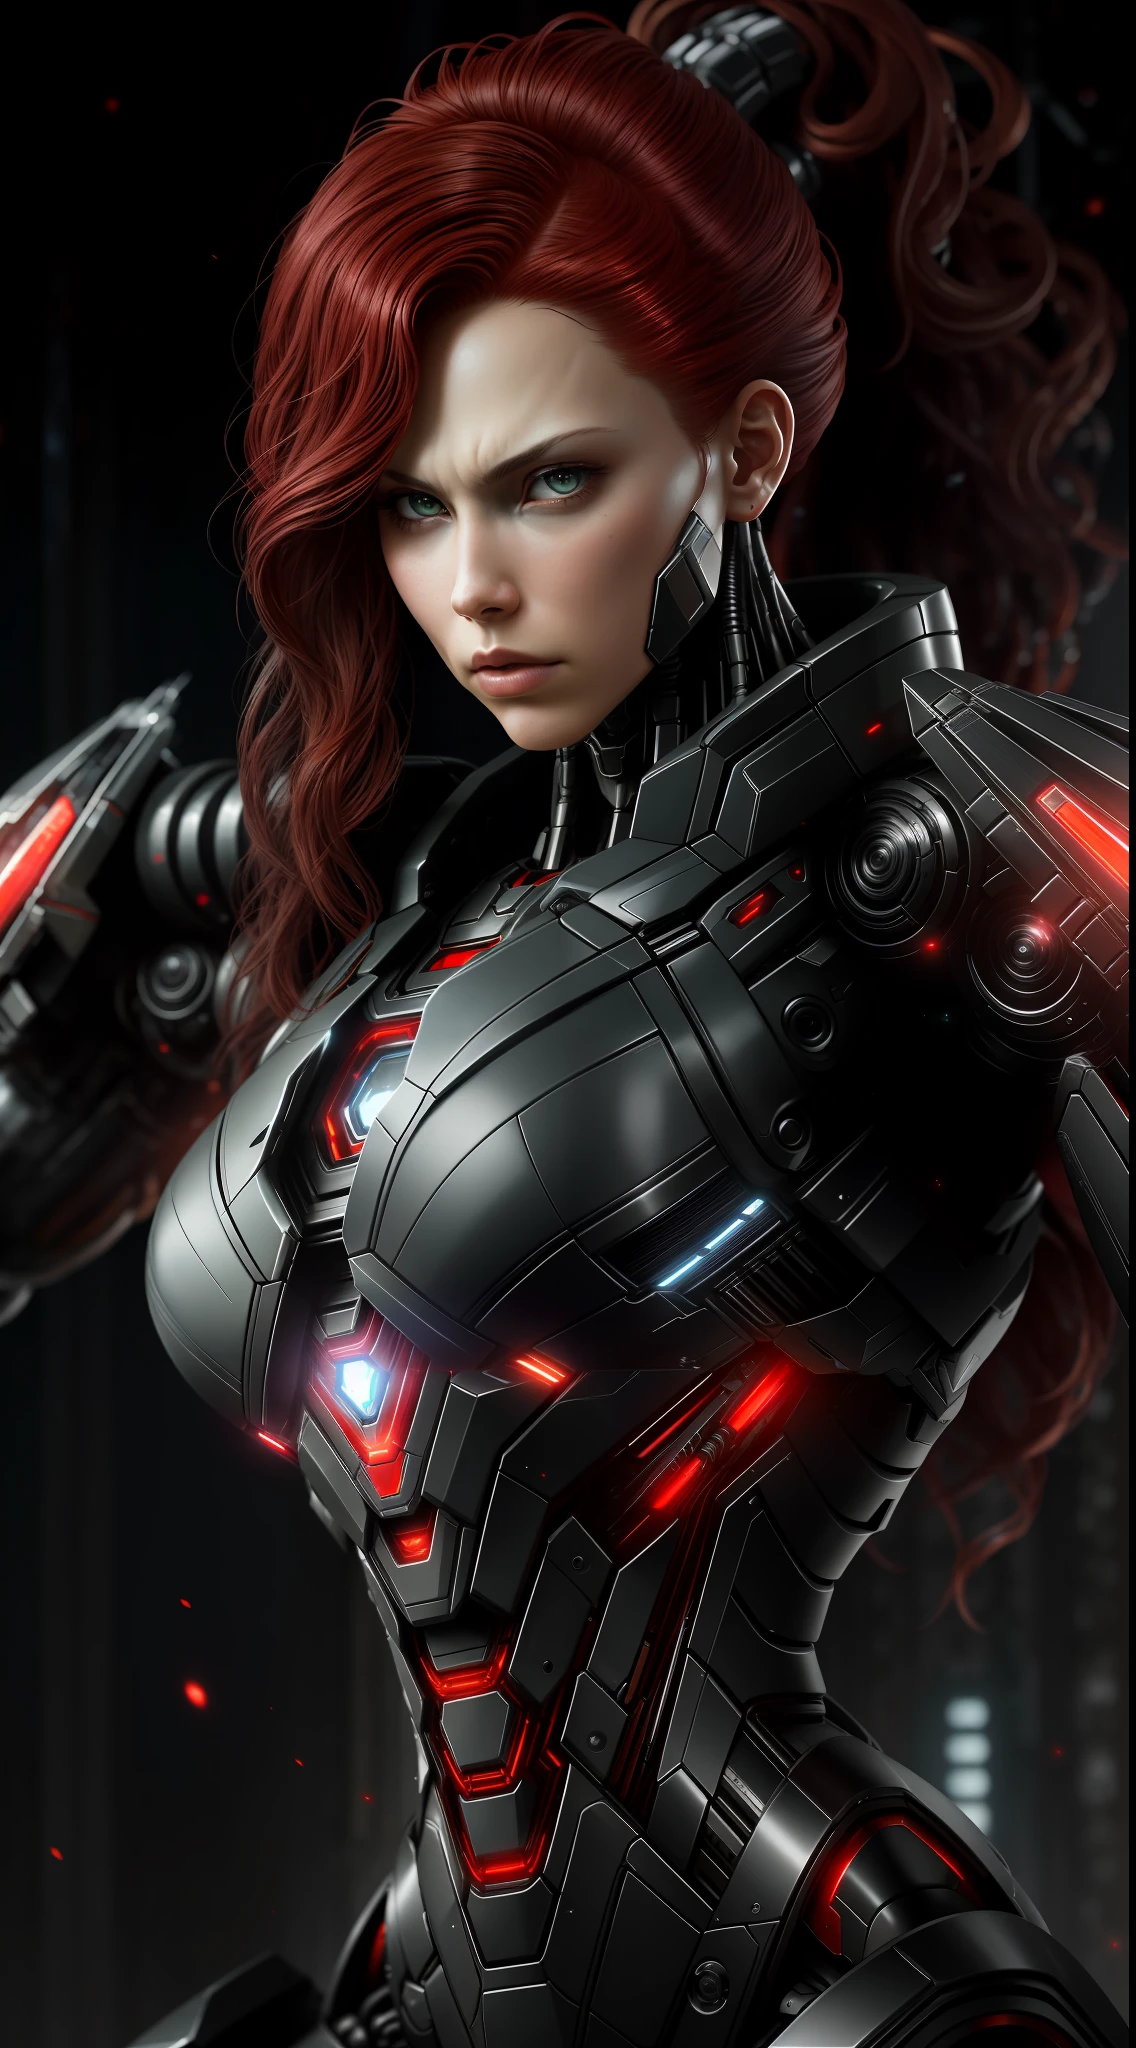 Черная Вдова из фотографий Marvel, биомеханический, сложный робот, полный рост, гиперреалистичный, безумные мелкие детали, чрезвычайно чистые линии, эстетика киберпанка, шедевр, представленный на Zbrush Central